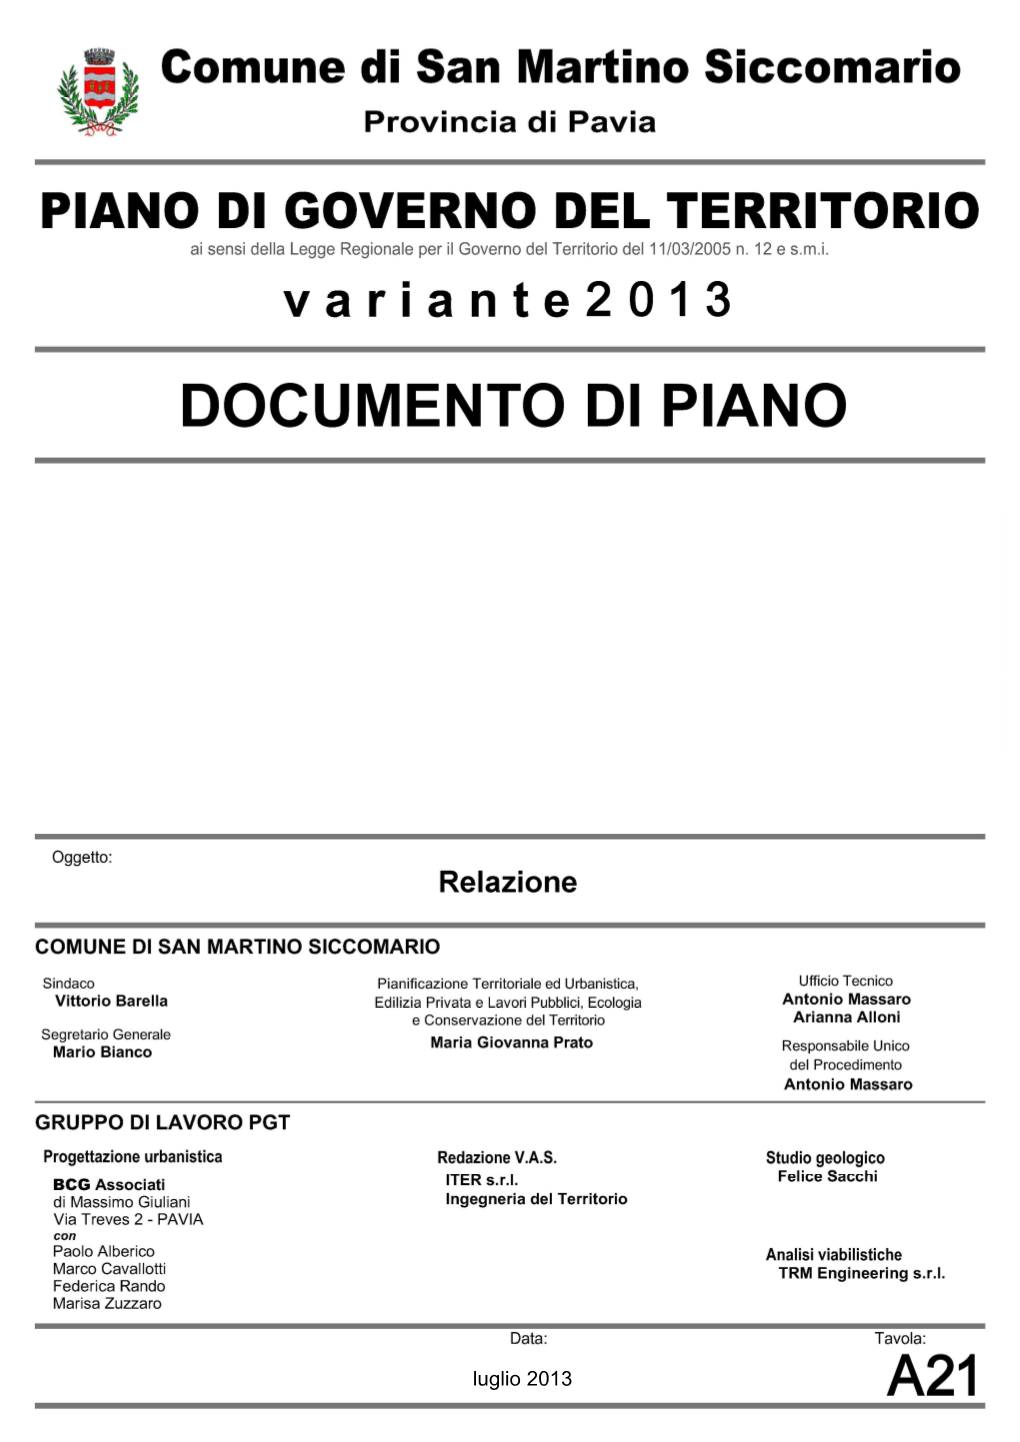 Relazione Del Documento Di Piano Luglio - 1 -2013 Comune Di San Martino Siccomario (PV) Piano Di Governo Del Territorio